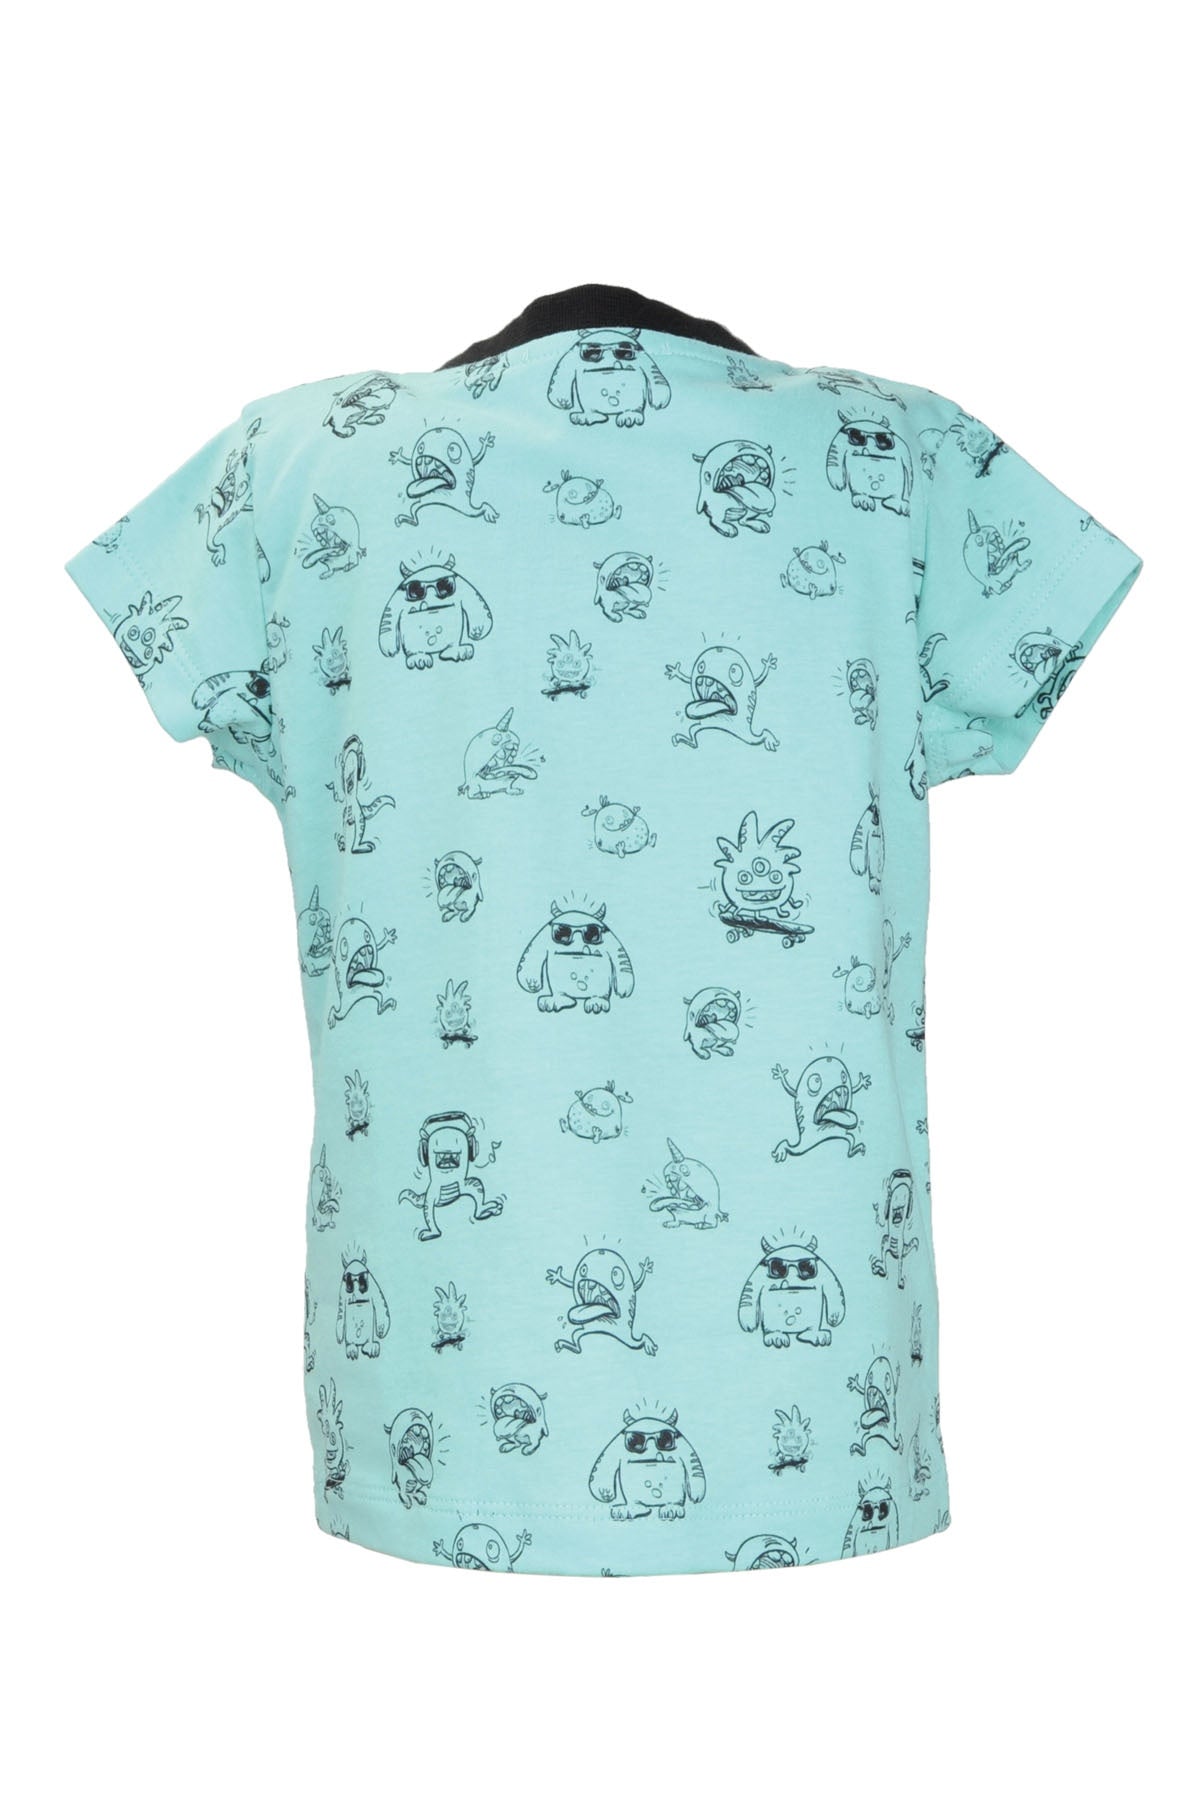 Erkek Bebek Yeşil Monster Desenli T-Shirt (9ay-7yaş)-1